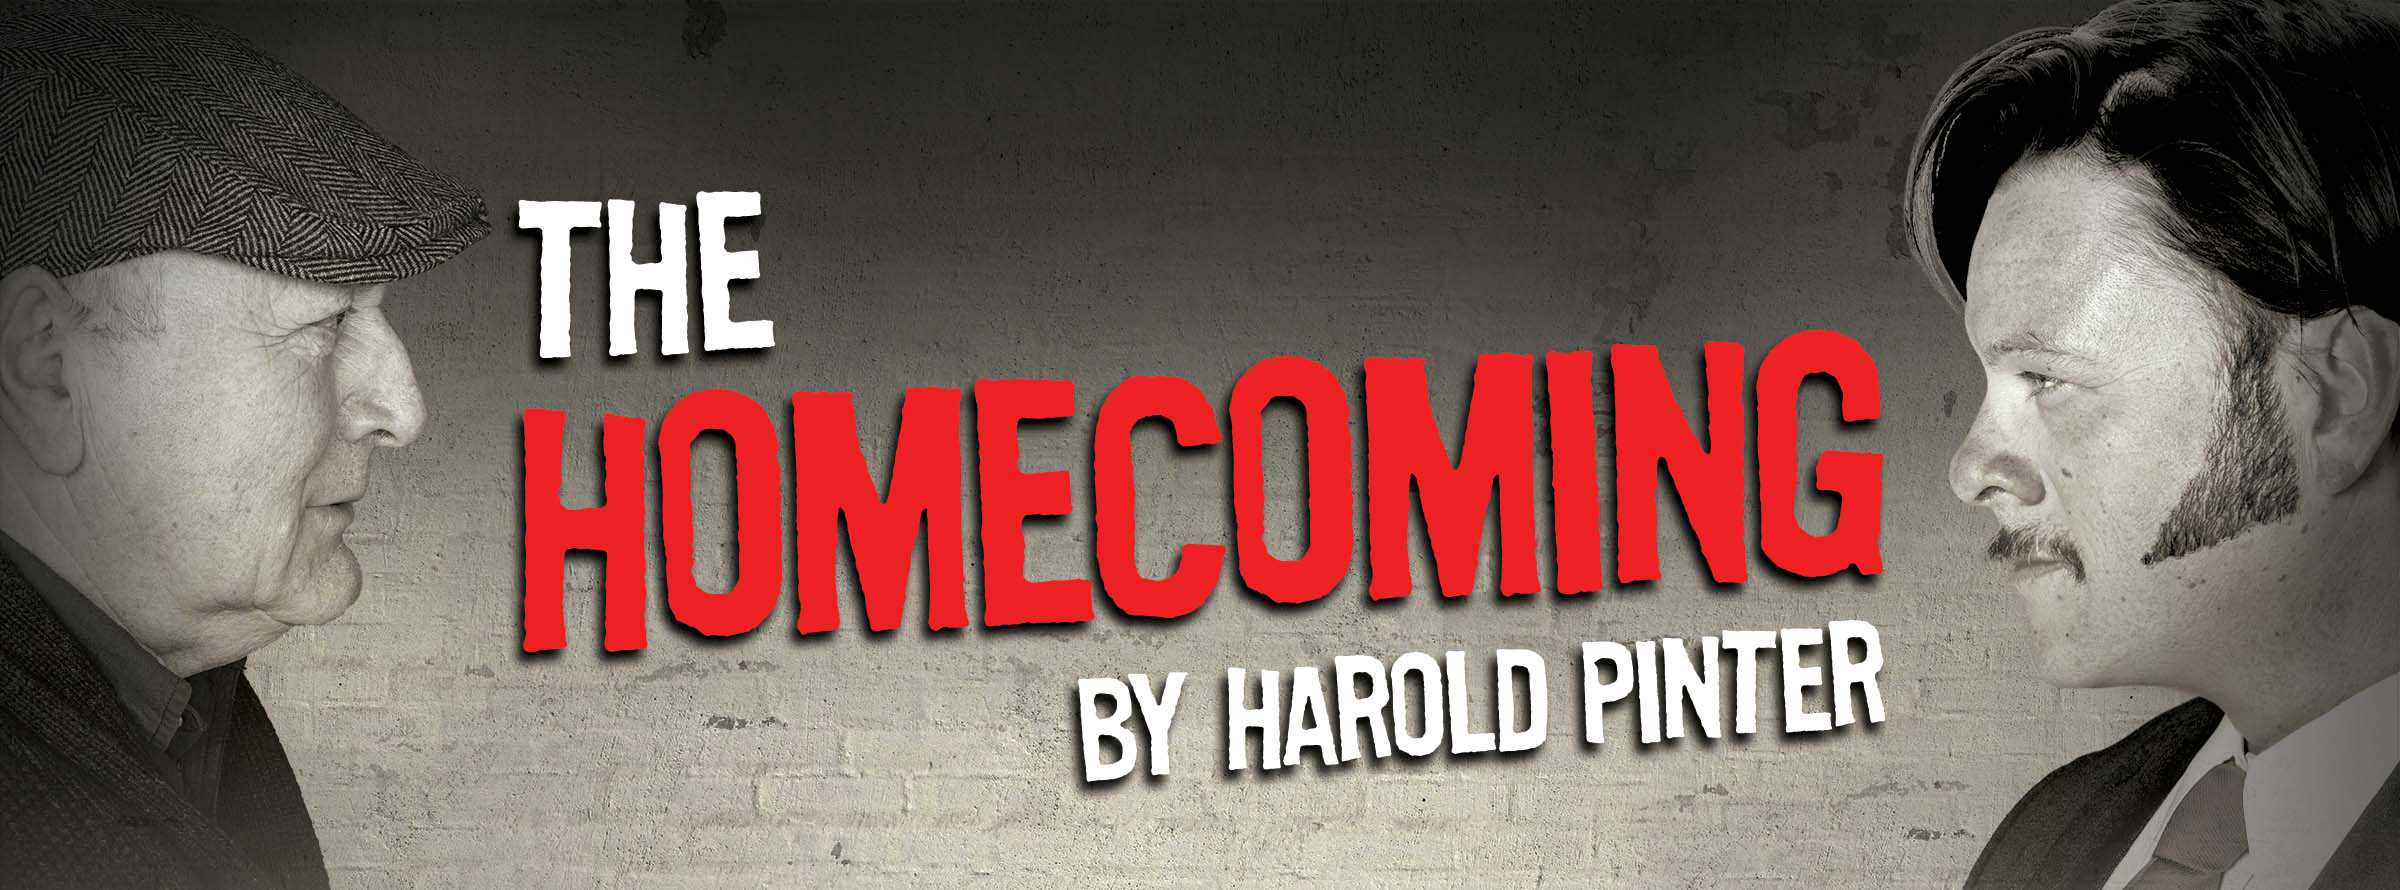 Harold Pinter Homecoming